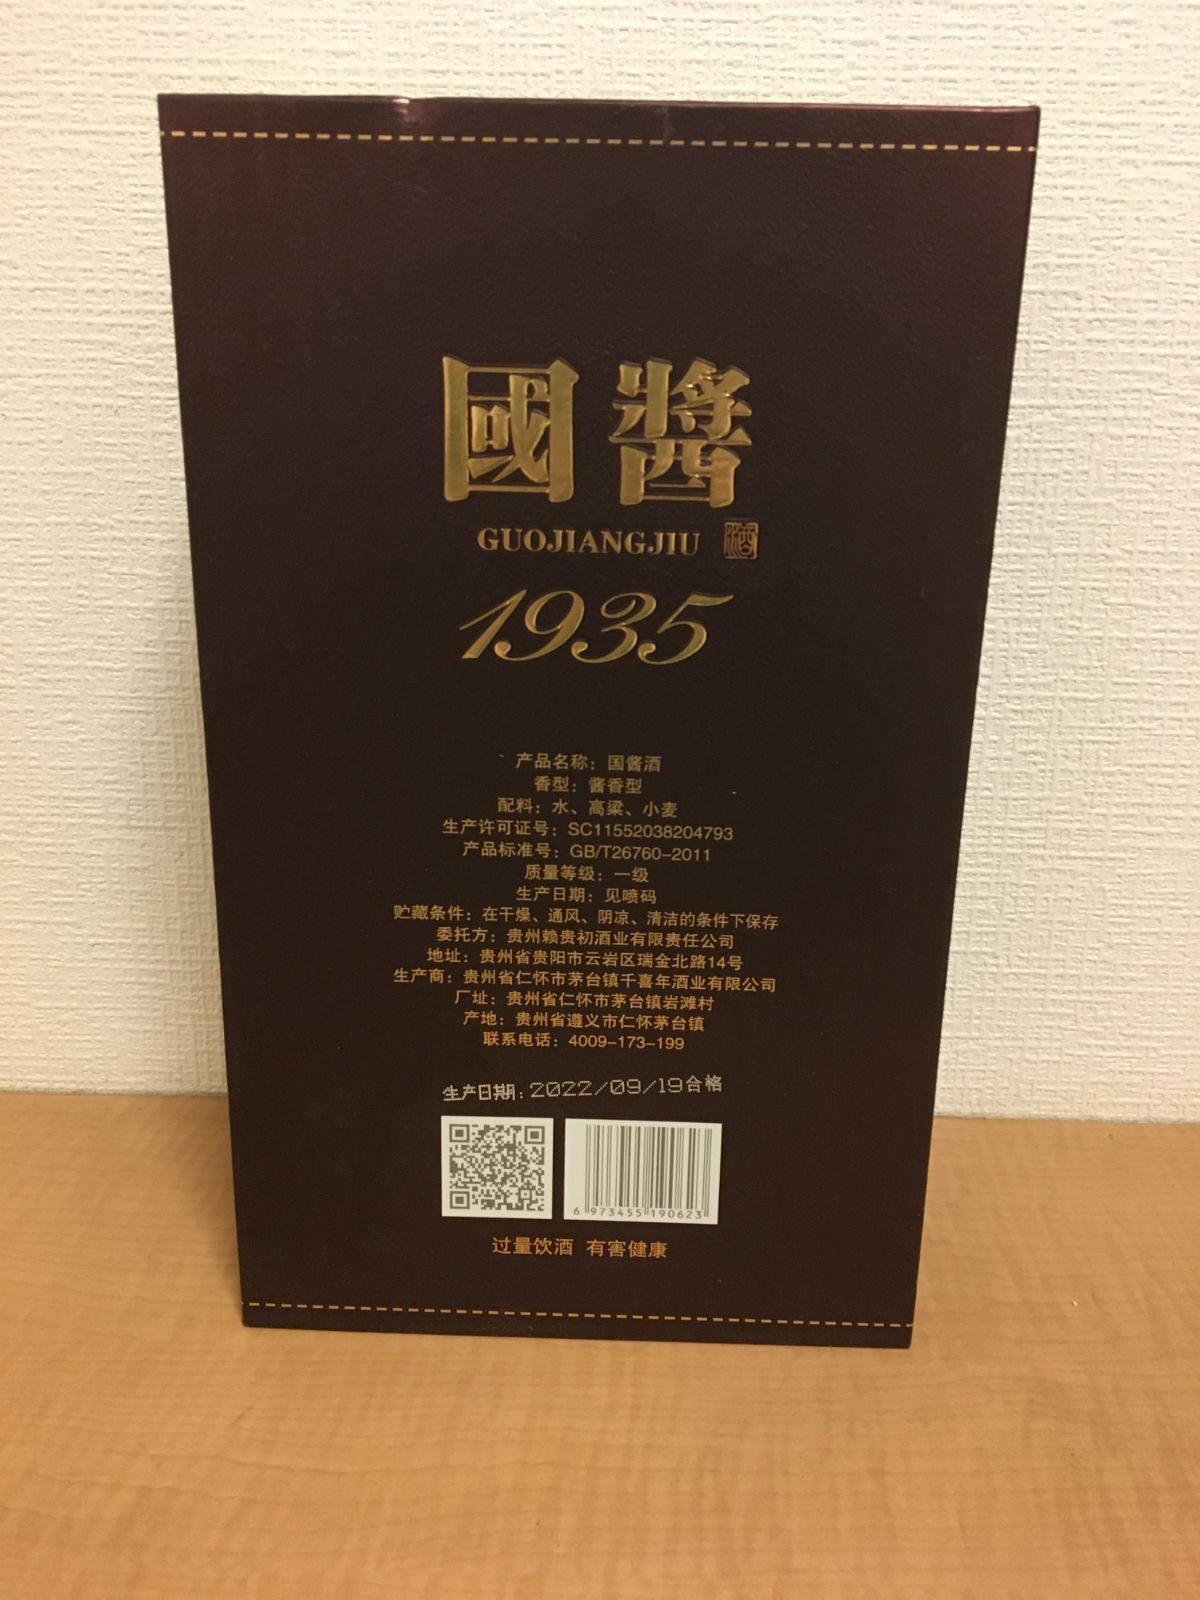 2本セット 貴州茅台鎮 国醤1935 マオタイ鎮酒 53% 500ml 中国酒 箱